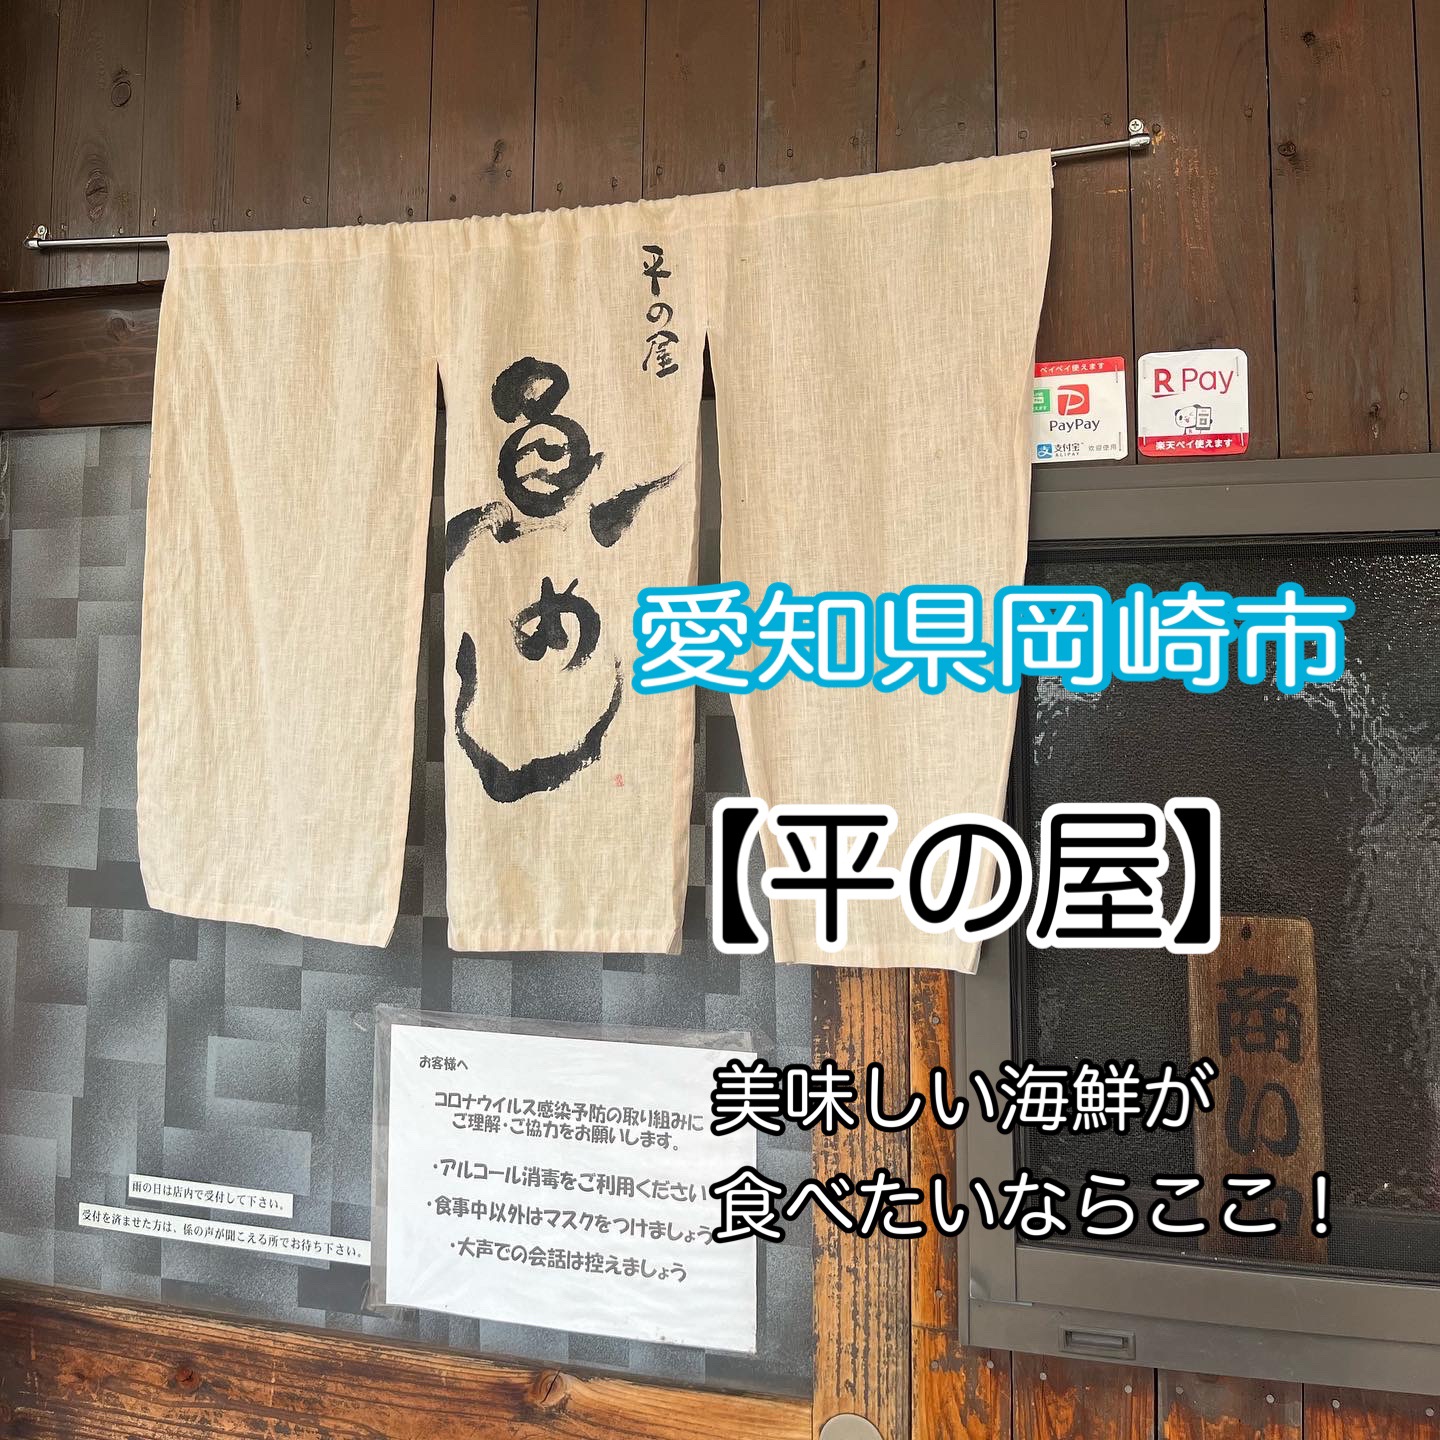 【平之屋】冈崎鱼市场内的人气海鲜午餐店!